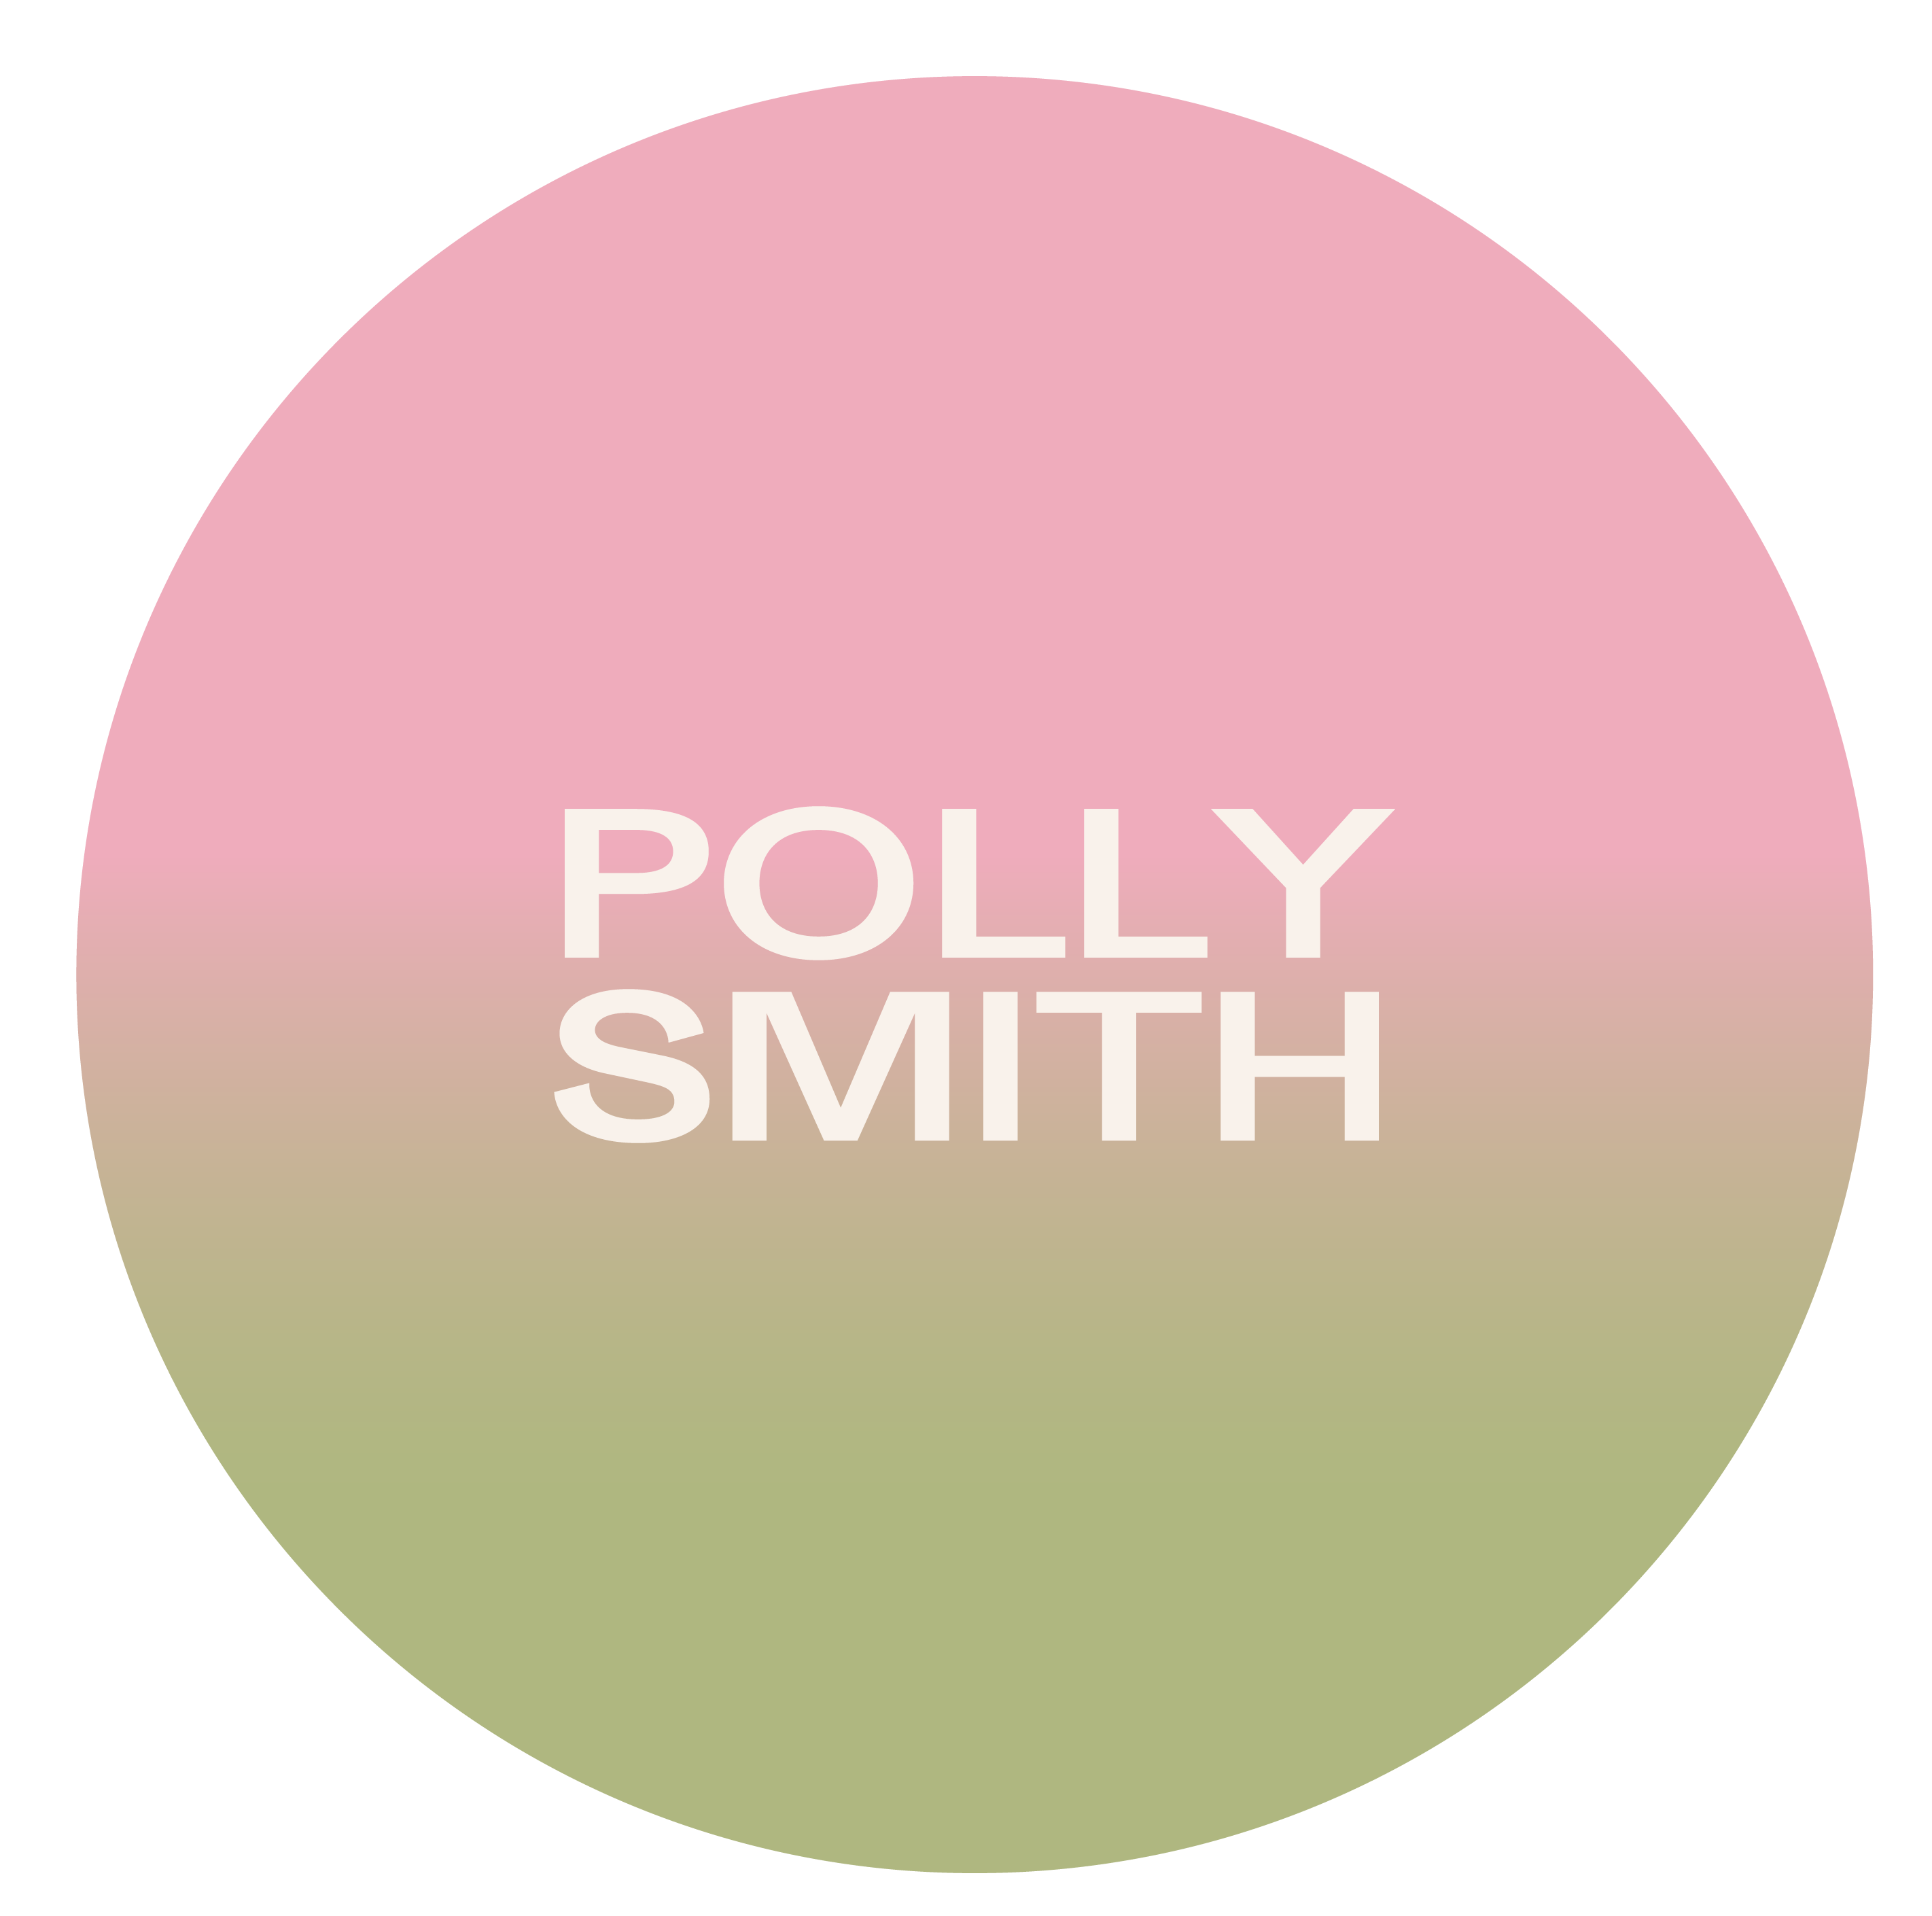 Polly Smith